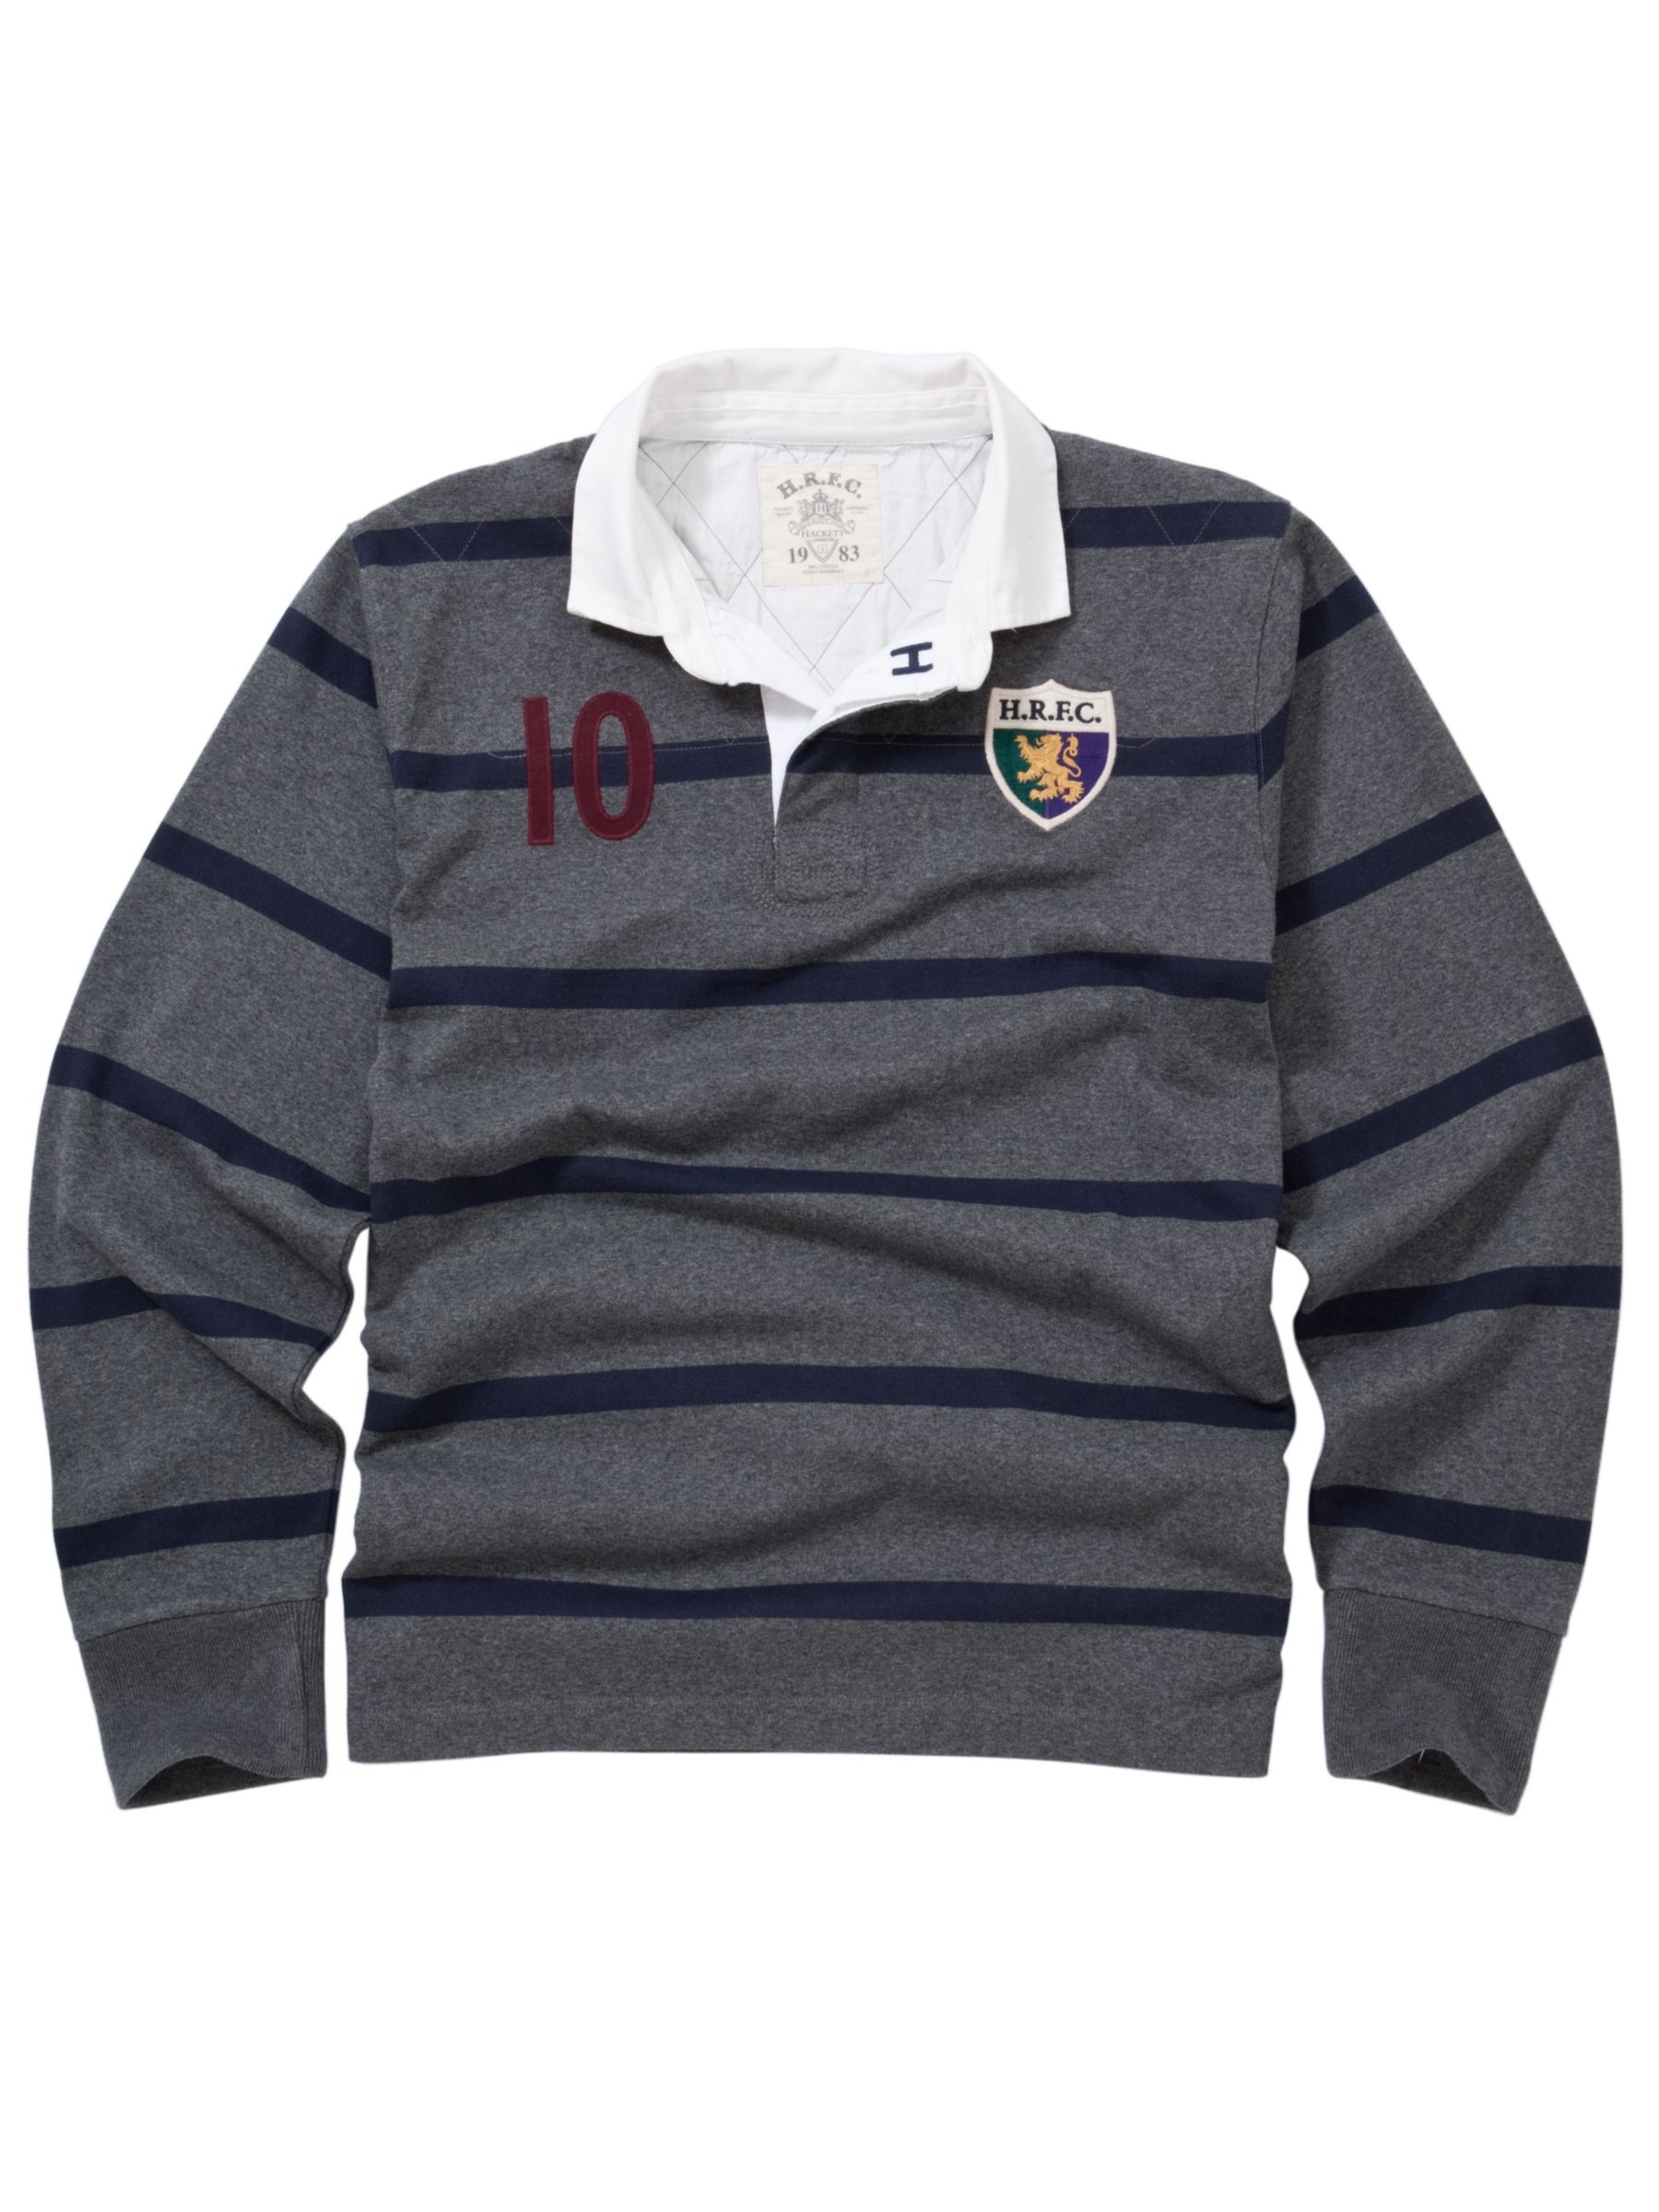 Inch Stripe Rugby Shirt, Grey